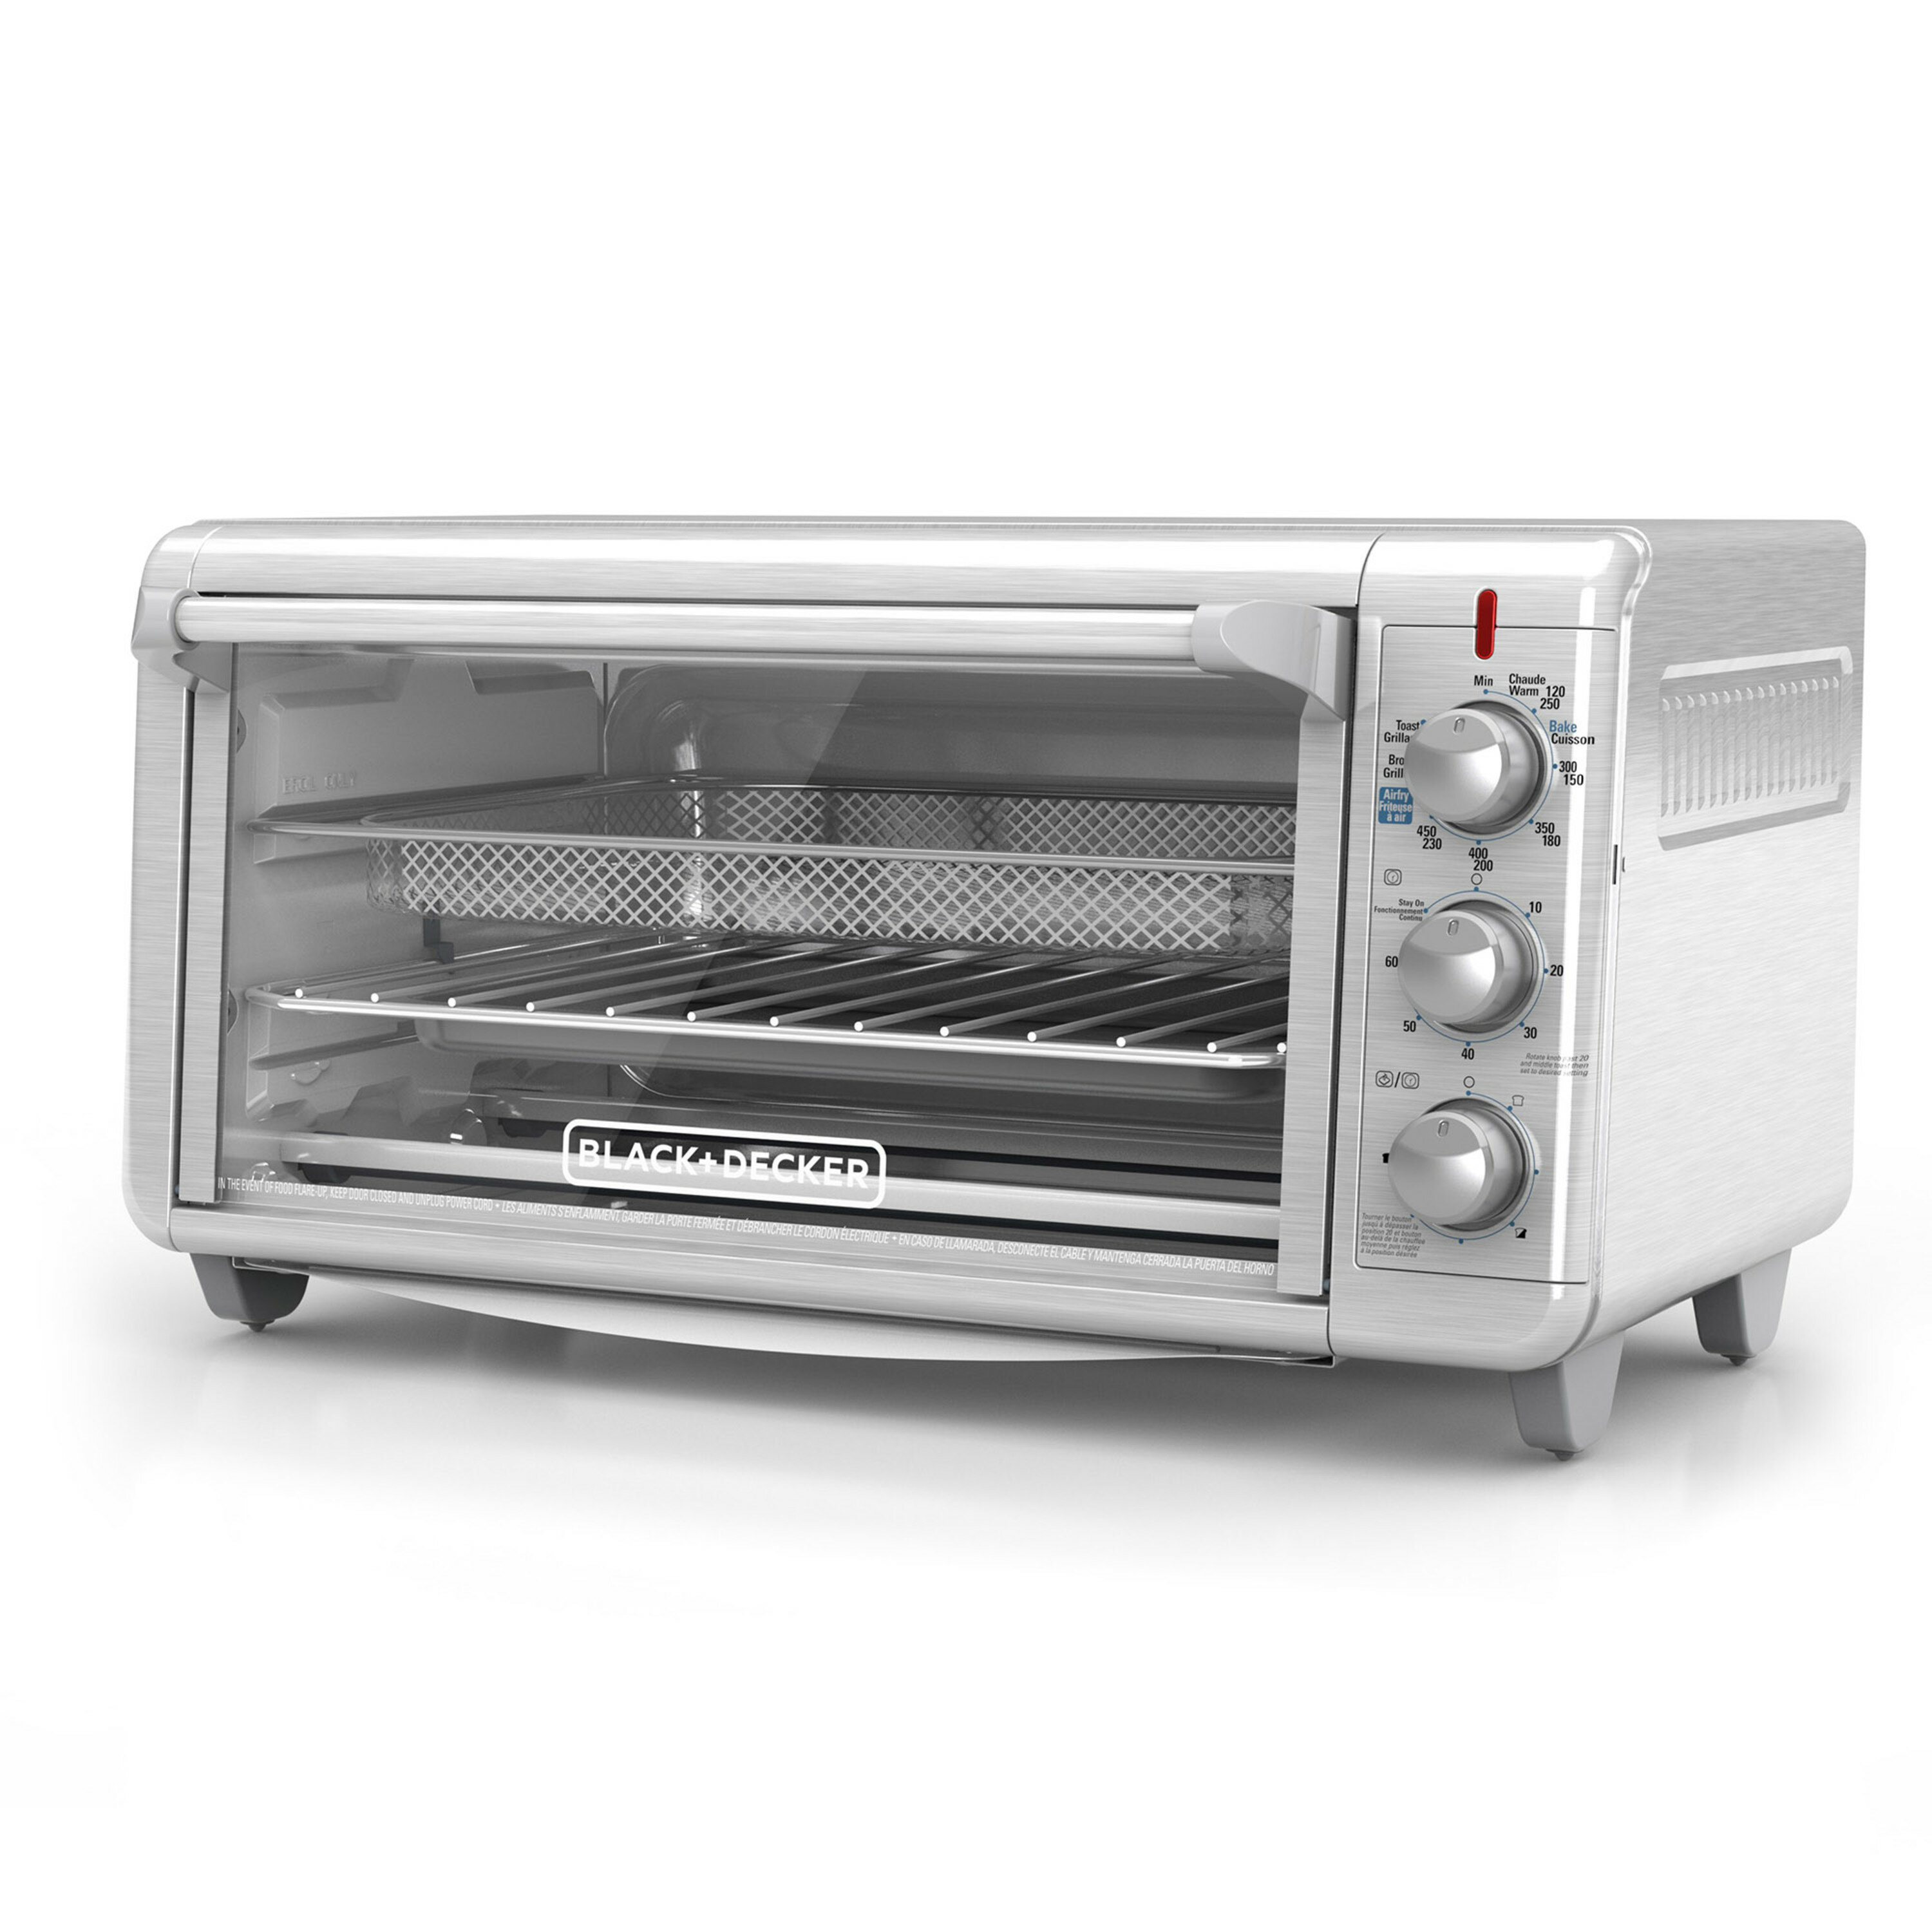 https://assets.wfcdn.com/im/63218975/compr-r85/7540/75407310/black-decker-crisp-n-bake-air-fry-toaster-oven.jpg